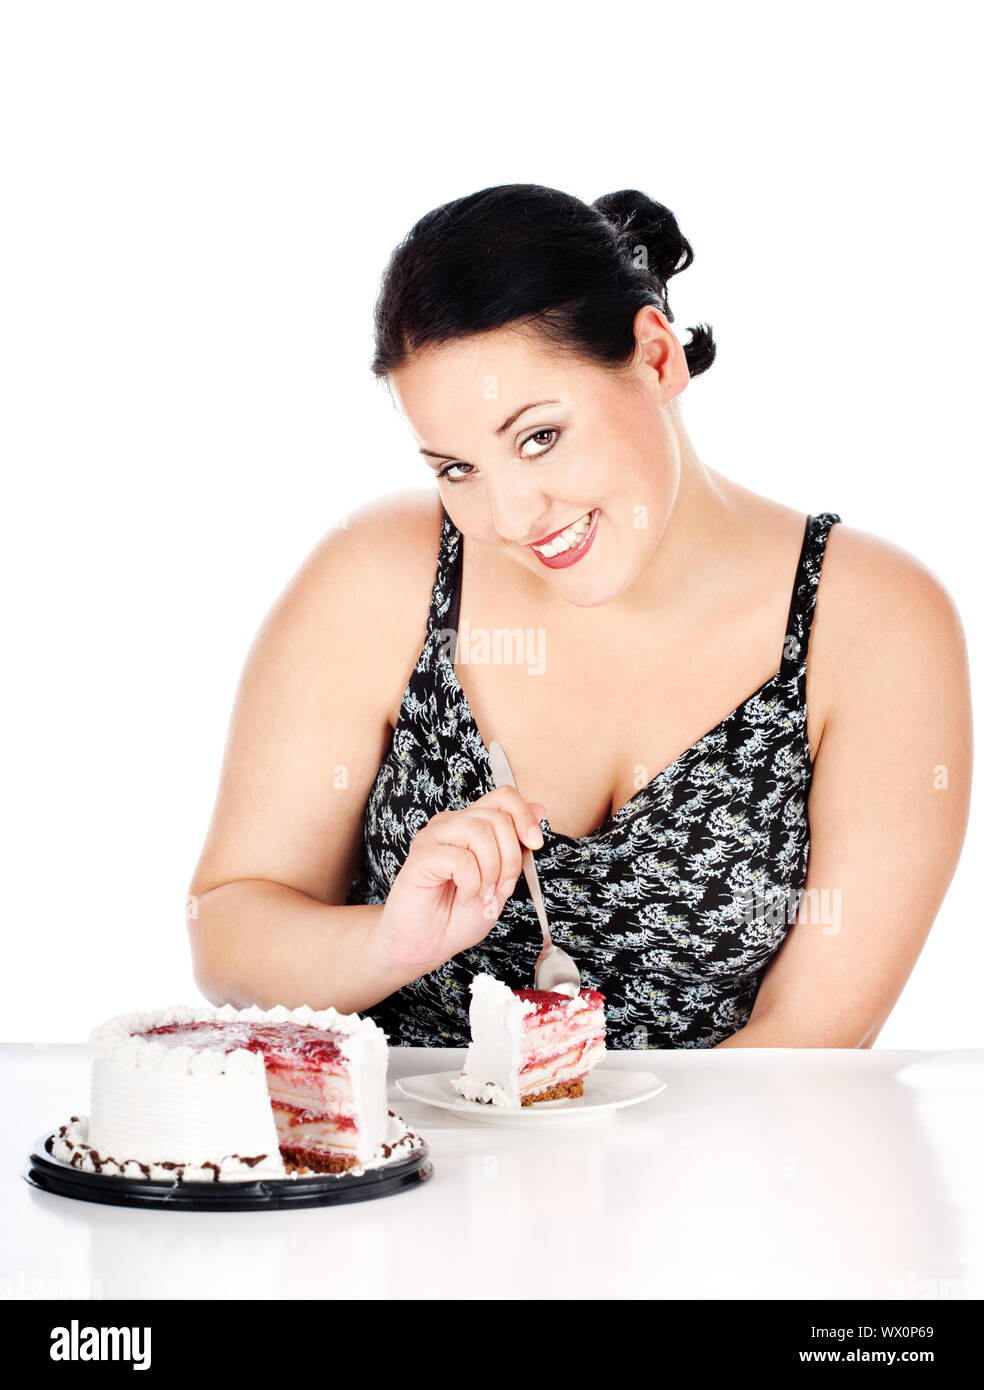 Вебкам толстушки. Торт для женщины. Красивый торт для толстушек. Полная женщина и тортик.